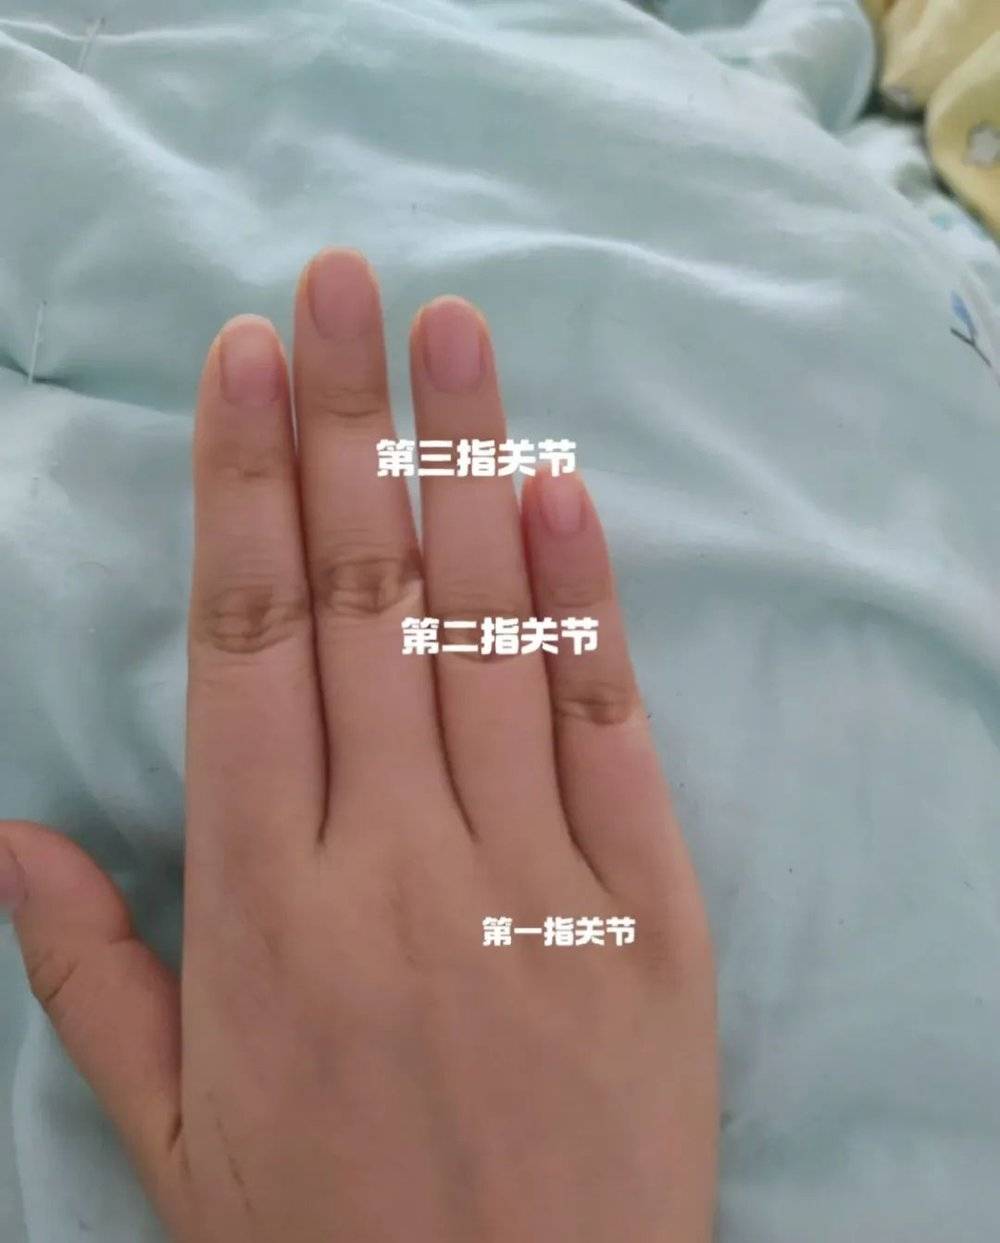 手指关节示意图。/小红书@李哈哈